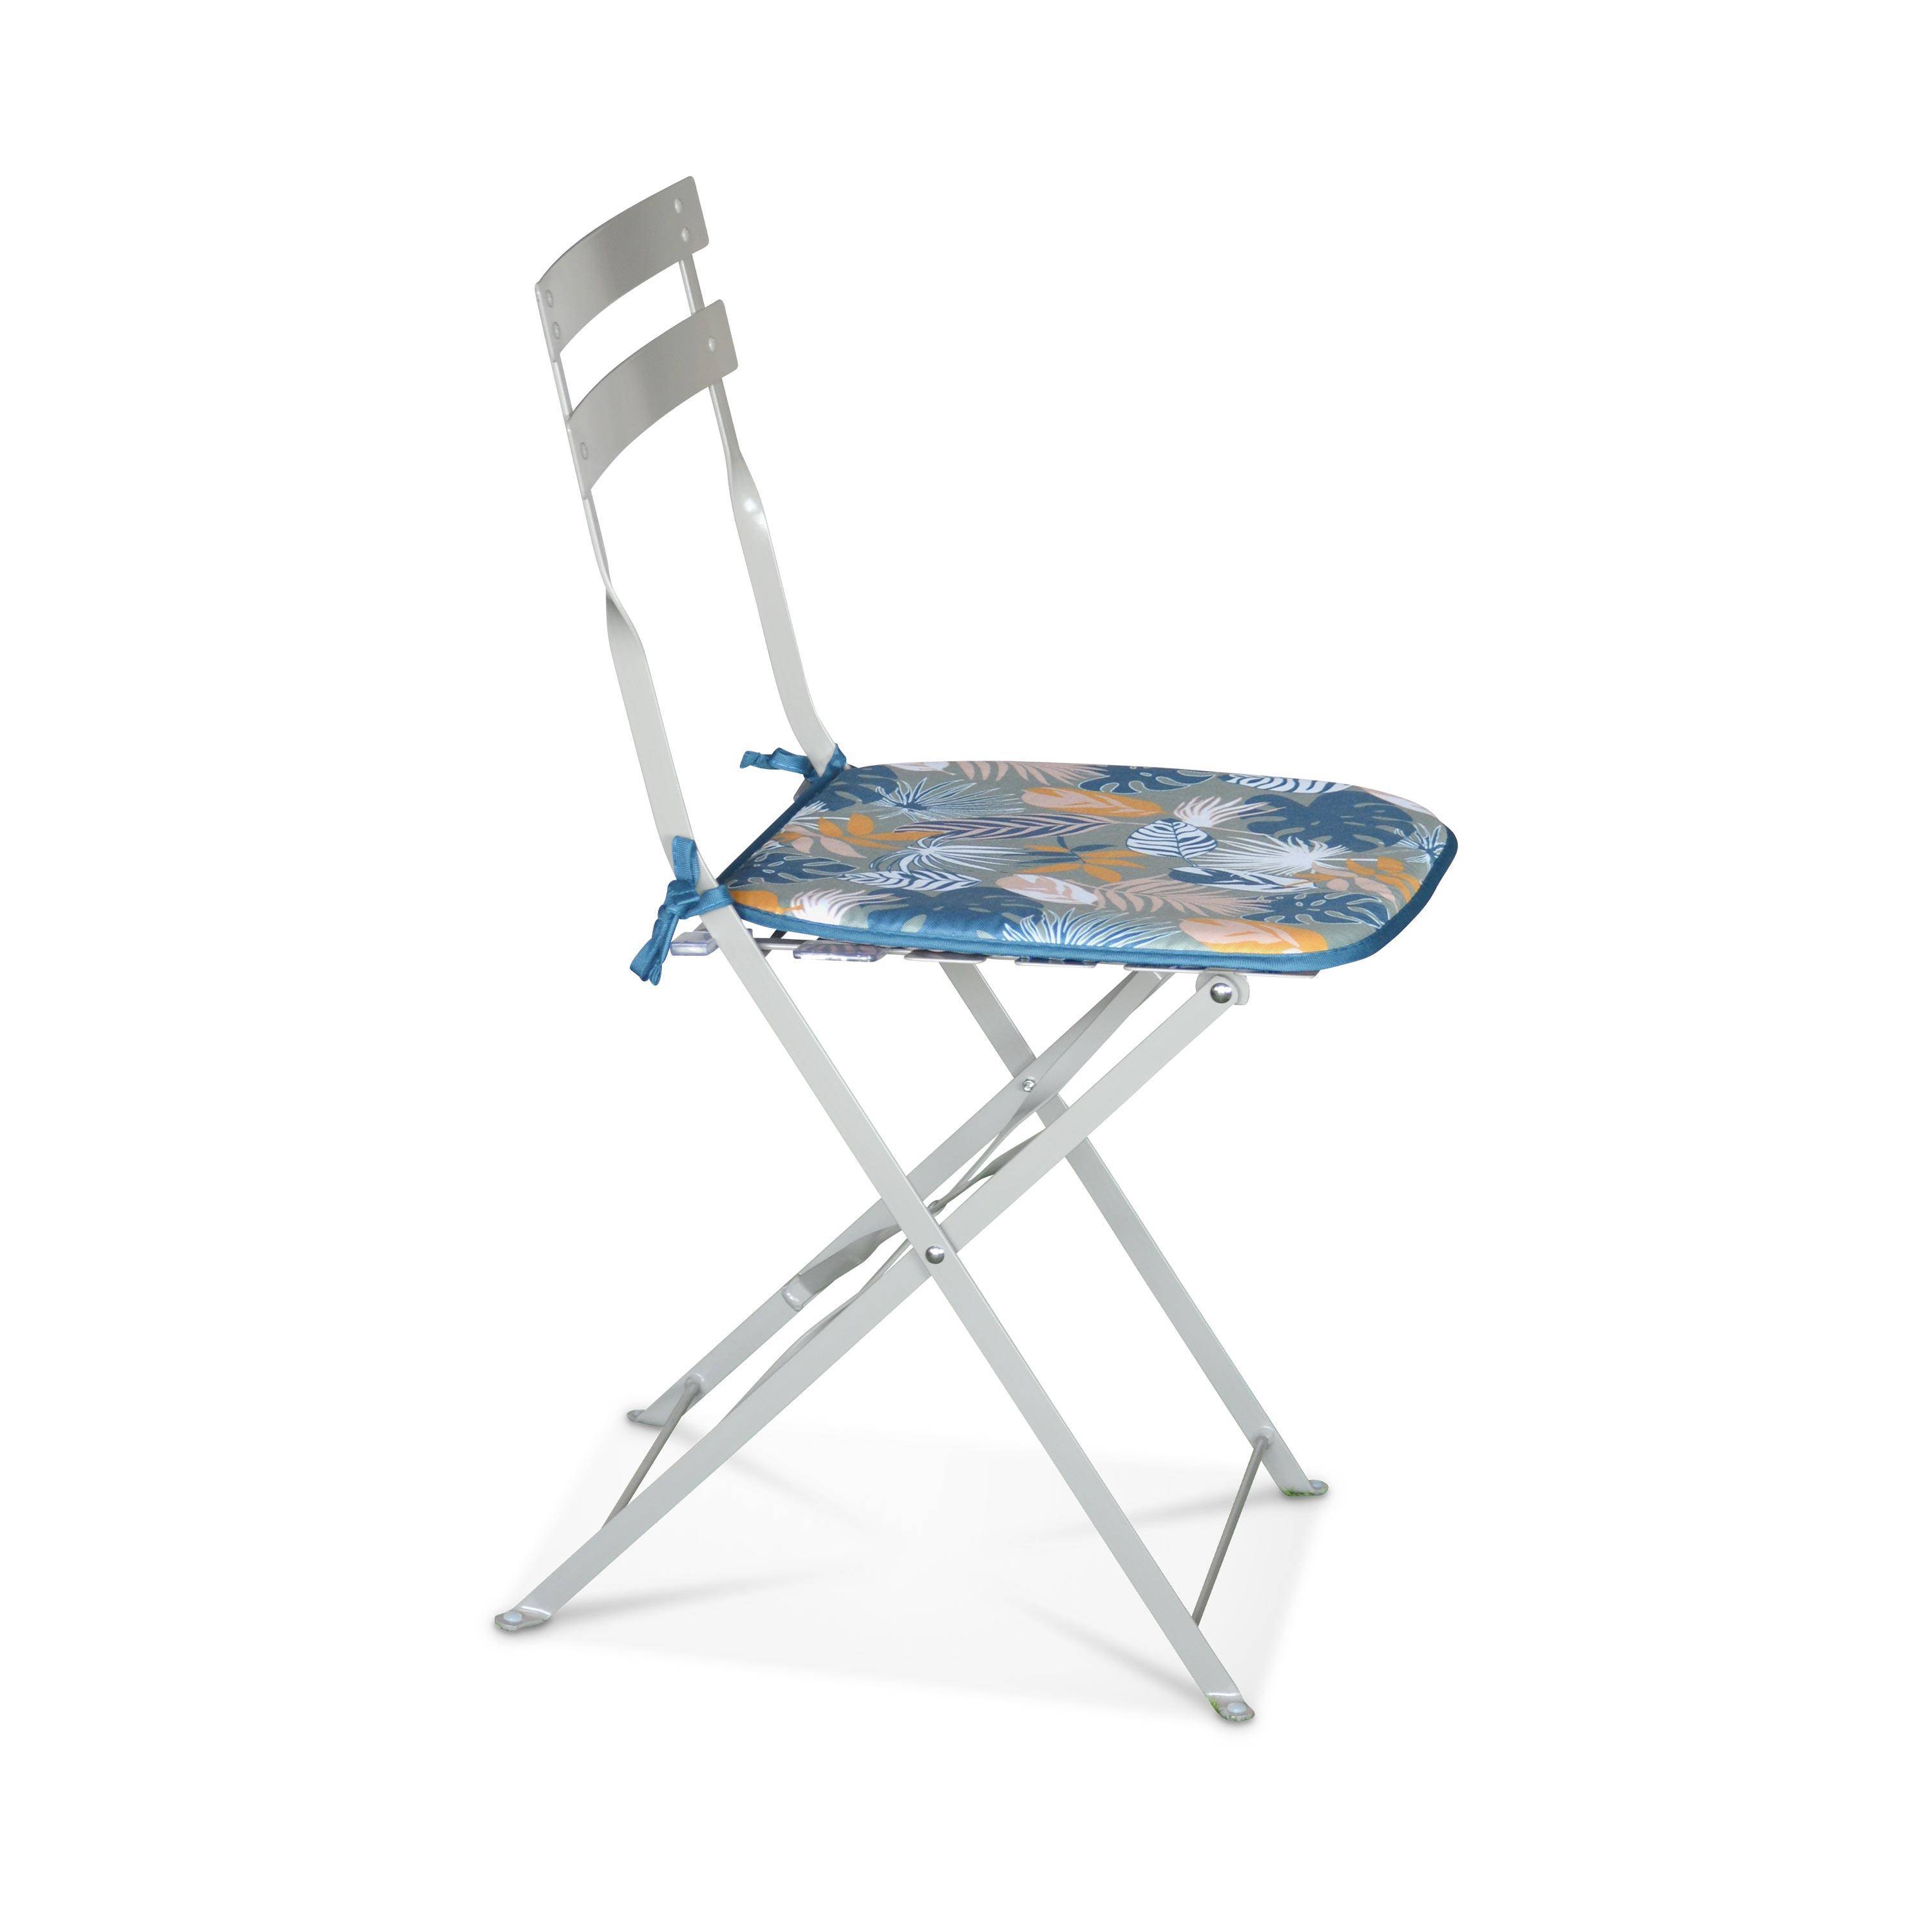 Lot de 4 galettes de chaise – 40 x 40cm – Coussin réversible imprimé exotique/ couleur unie, assise avec fixation à nœuds, bords gansés Photo2